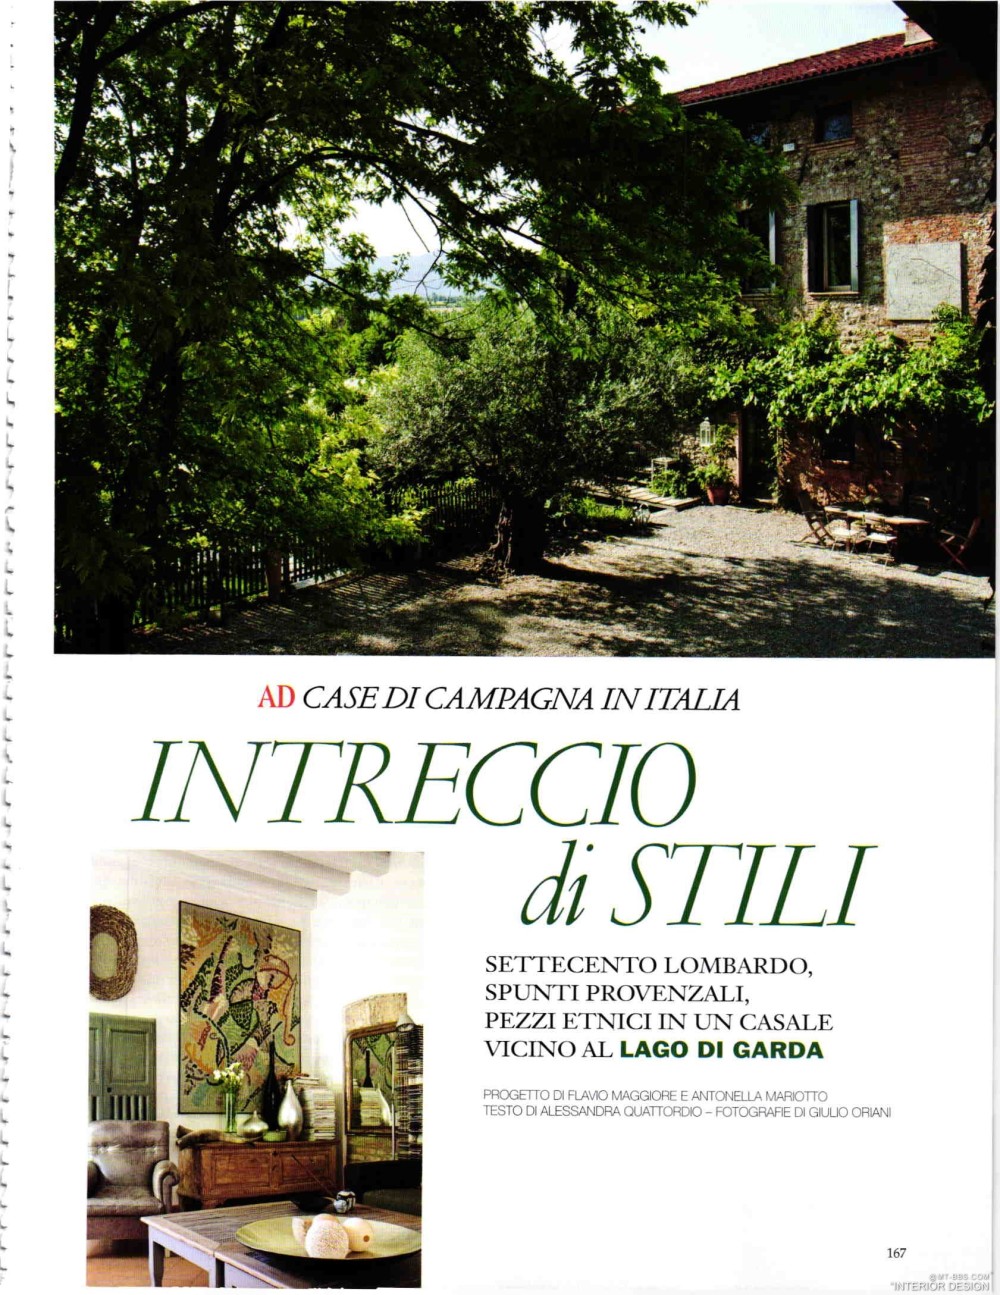 意大利AD 杂志 2012年全年JPG高清版本 全免（上传完毕）_0169.jpg